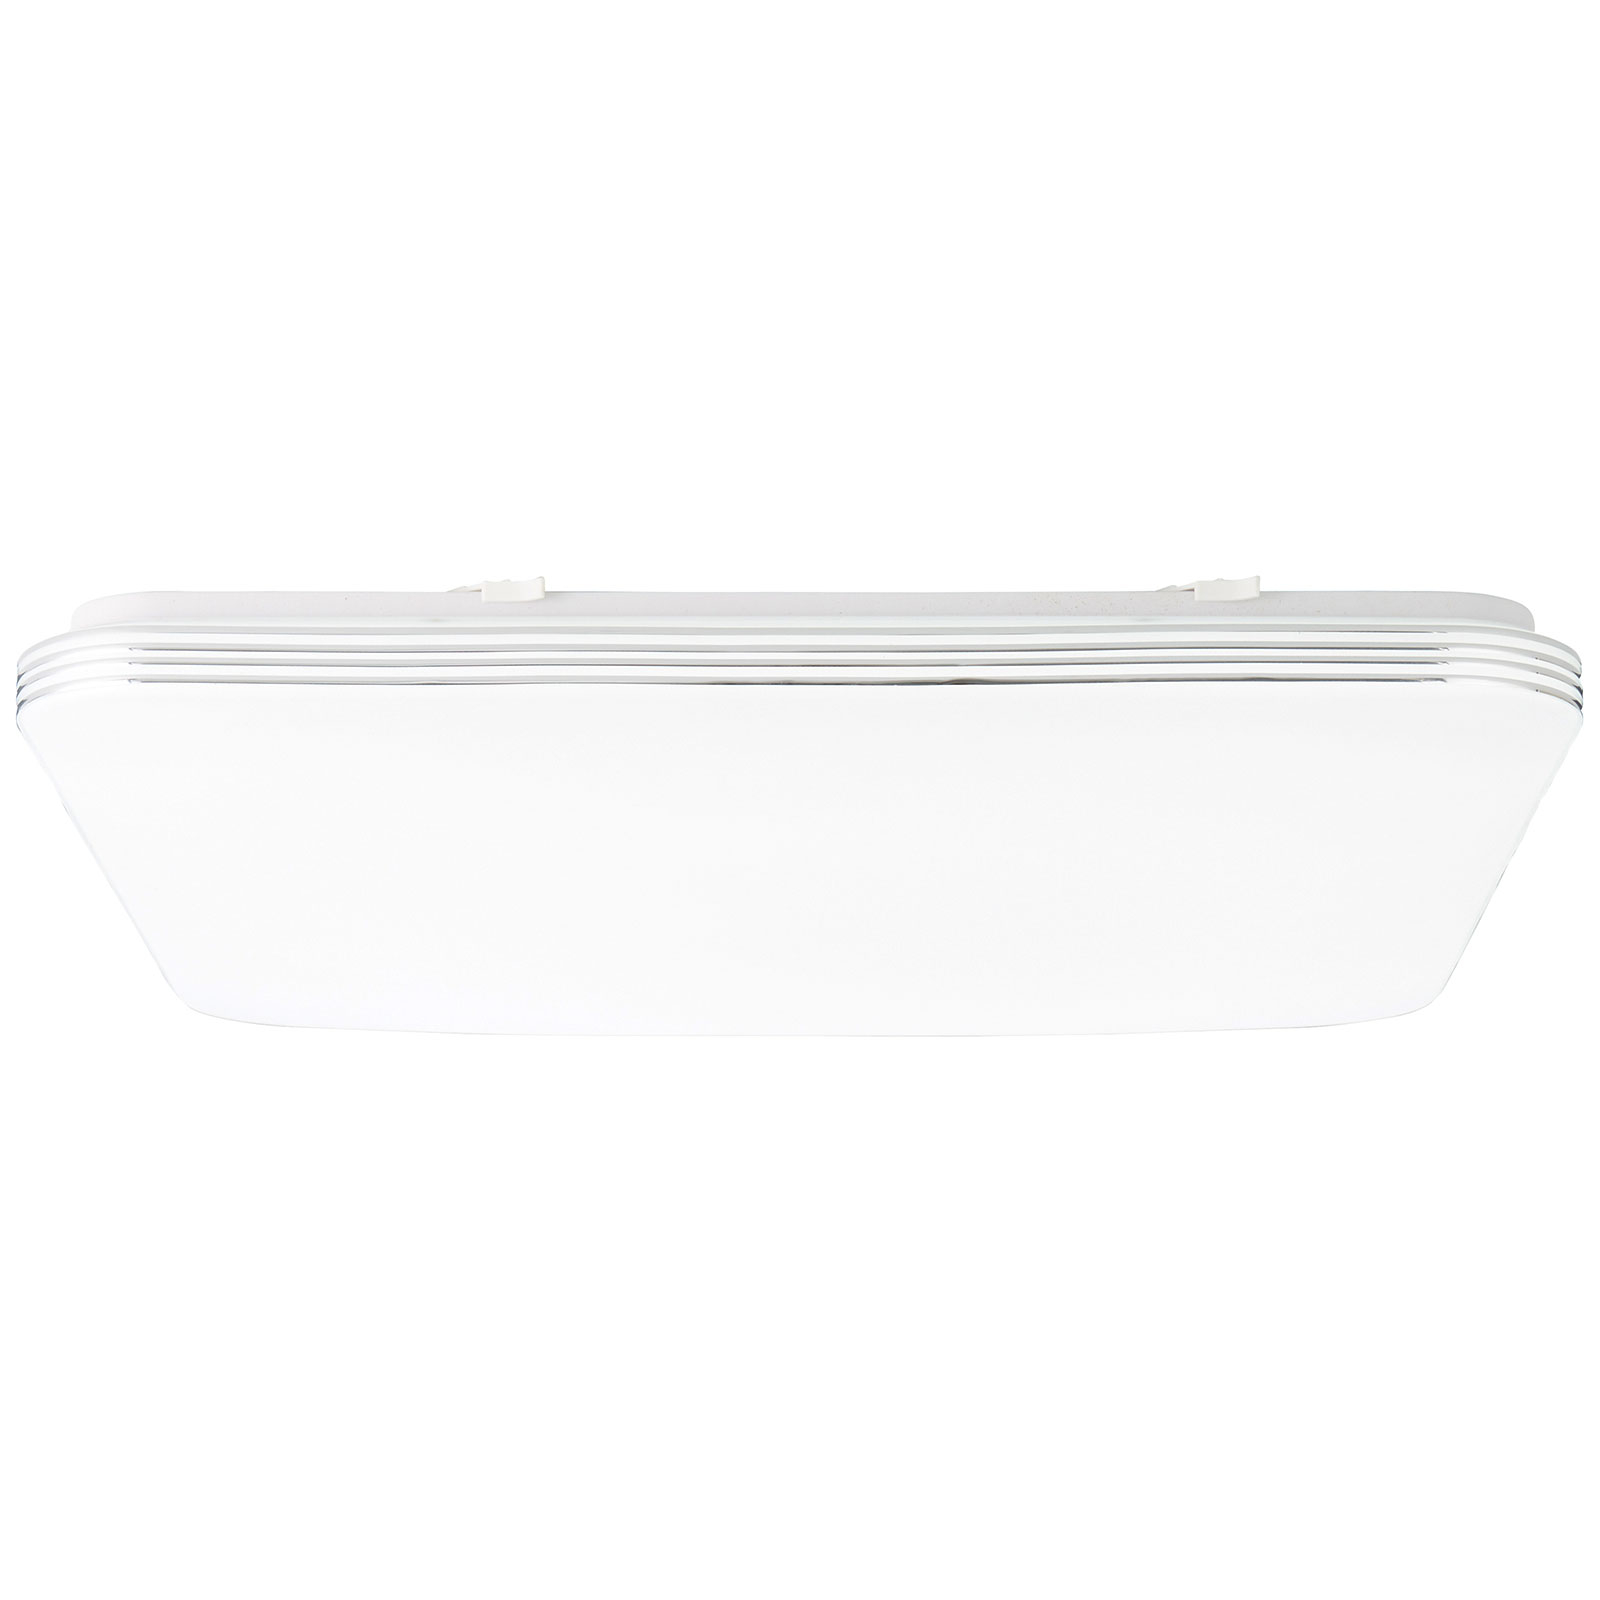 LED-taklampe Ariella i hvit/krom, 54 x 54 cm